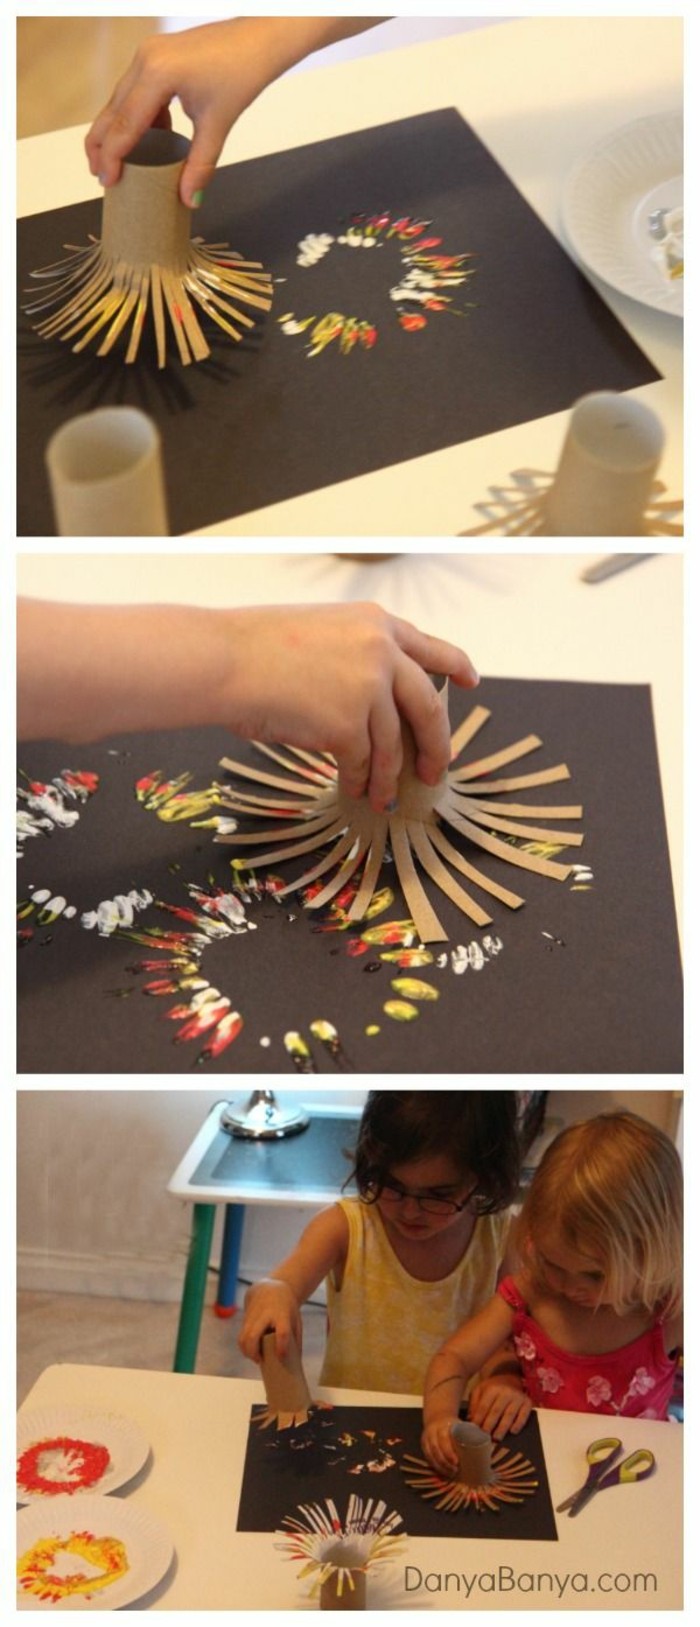 het maken van de herfst met kinderen maakt herfstdecoratie zelf maken met zelfklevende tegelrollen stempelen